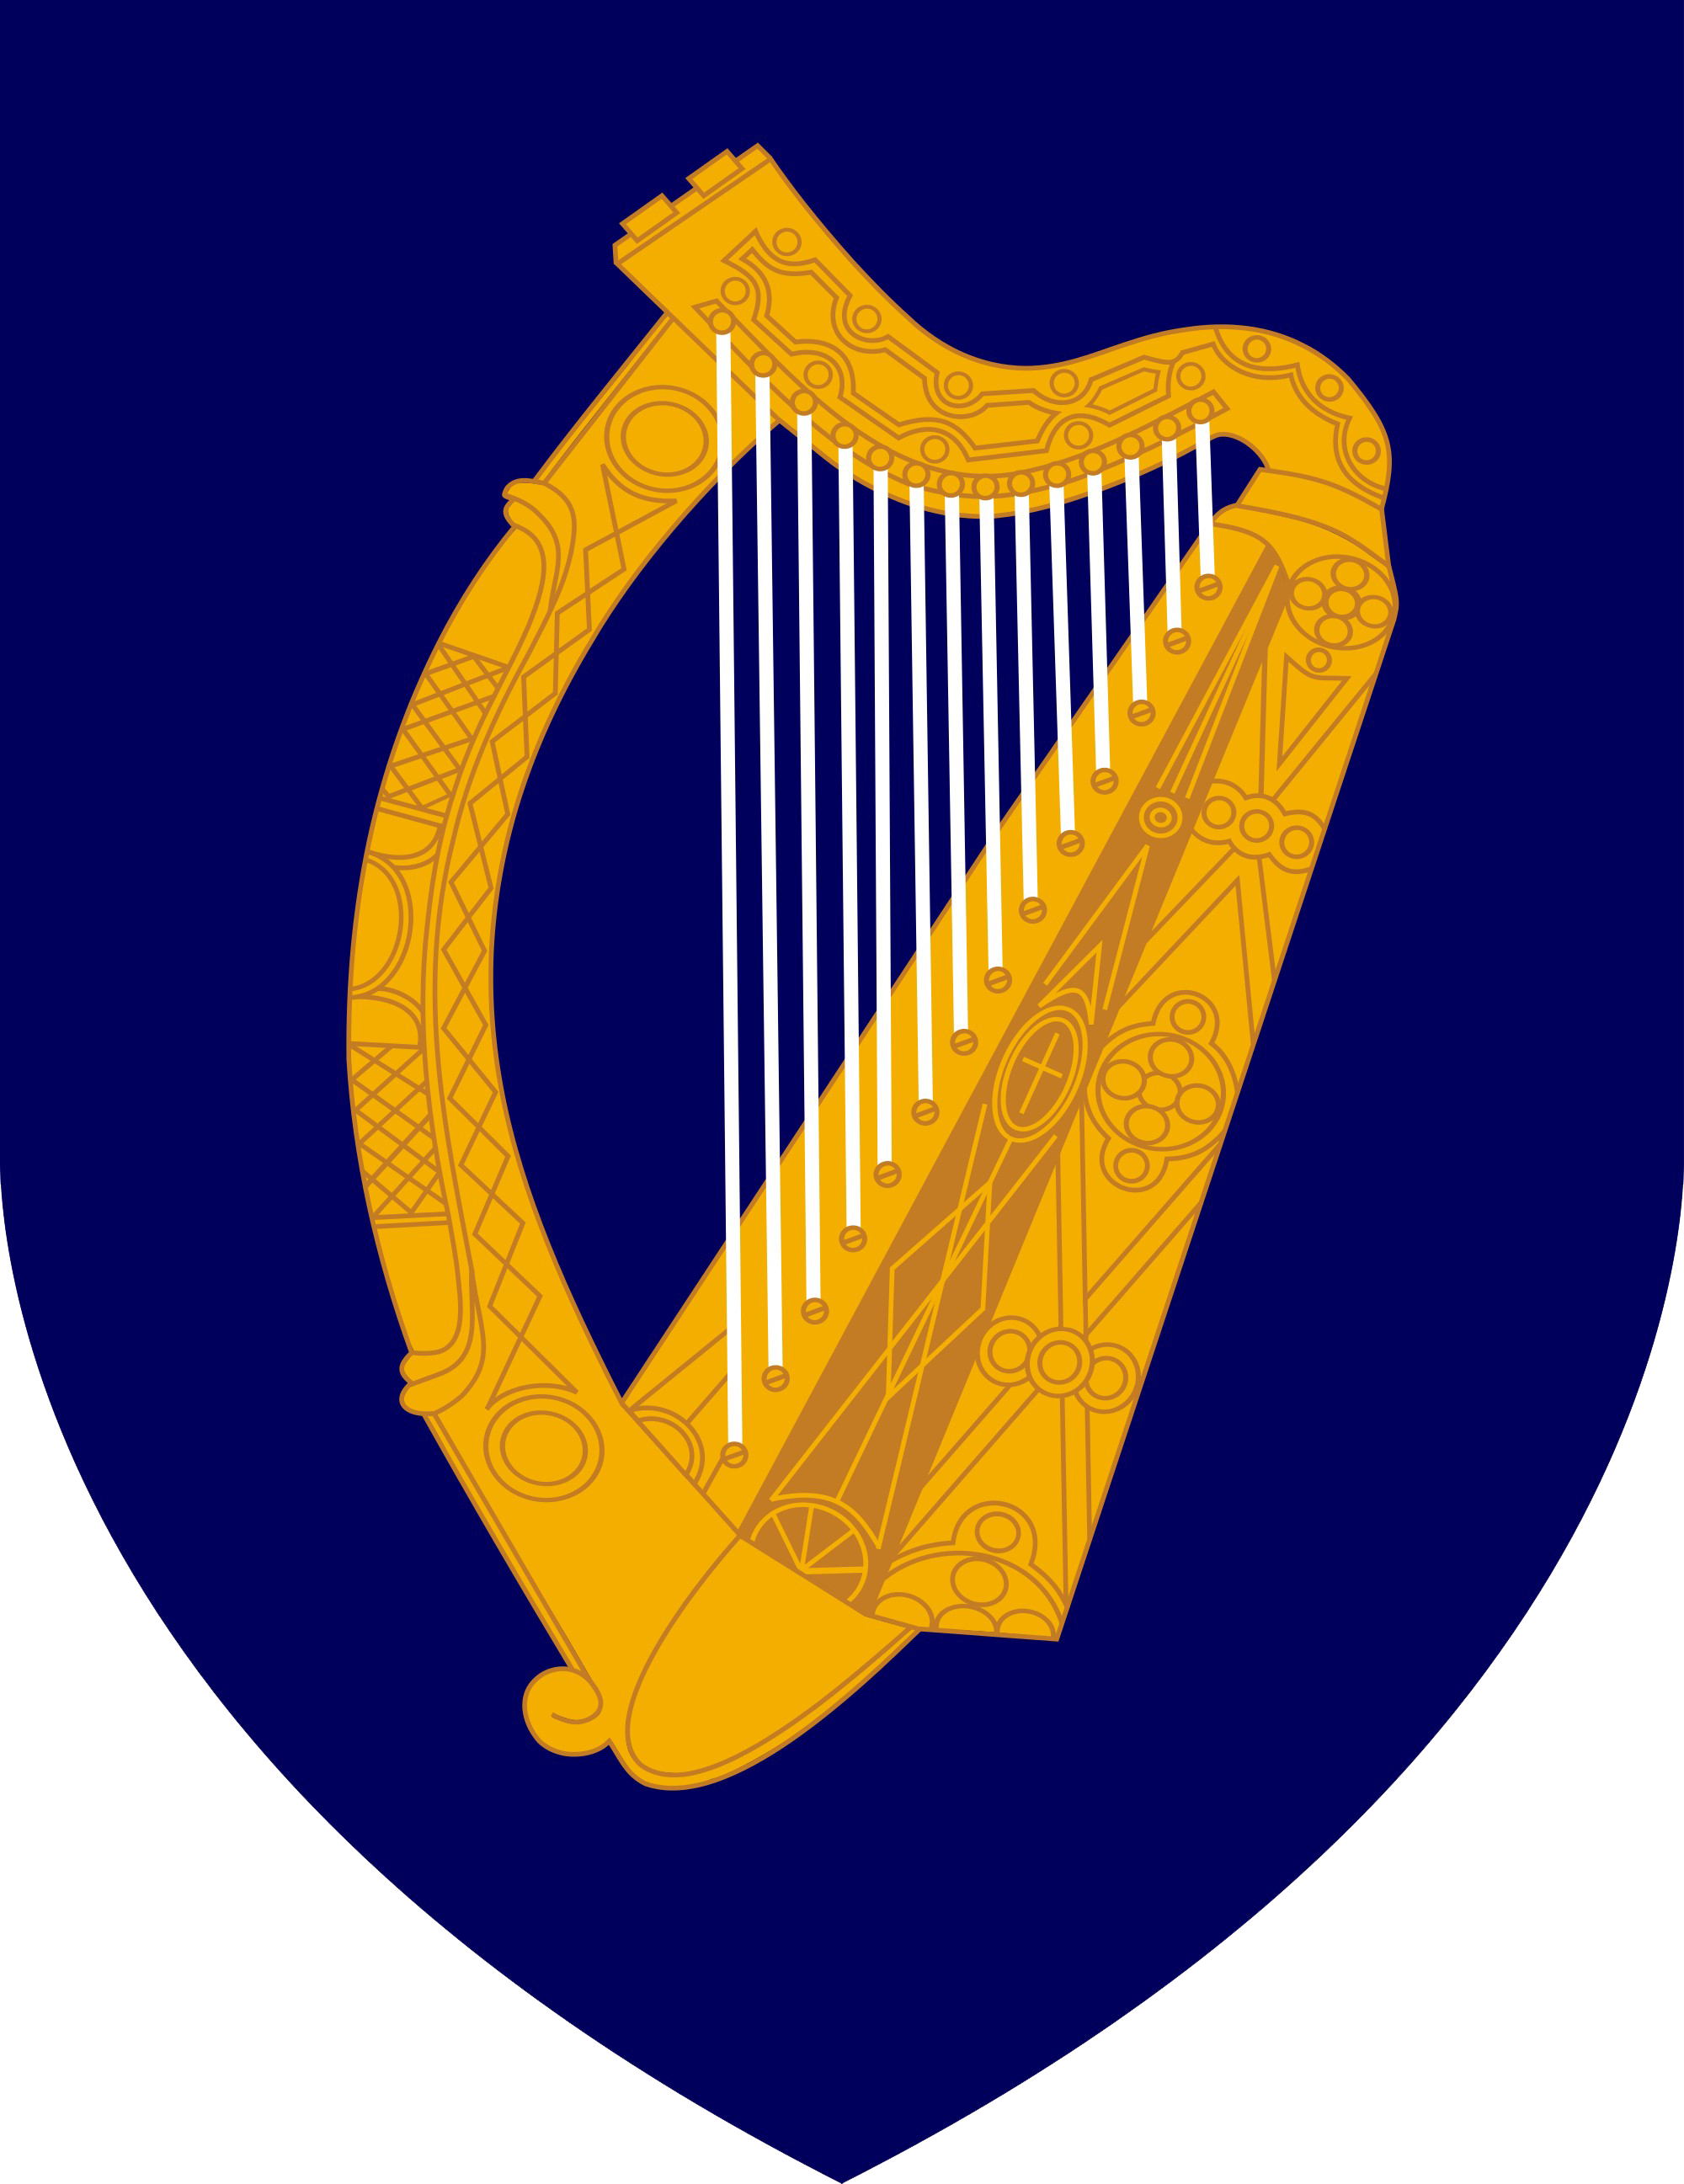 Imagen Transparente del instrumento de arpa irlandesa